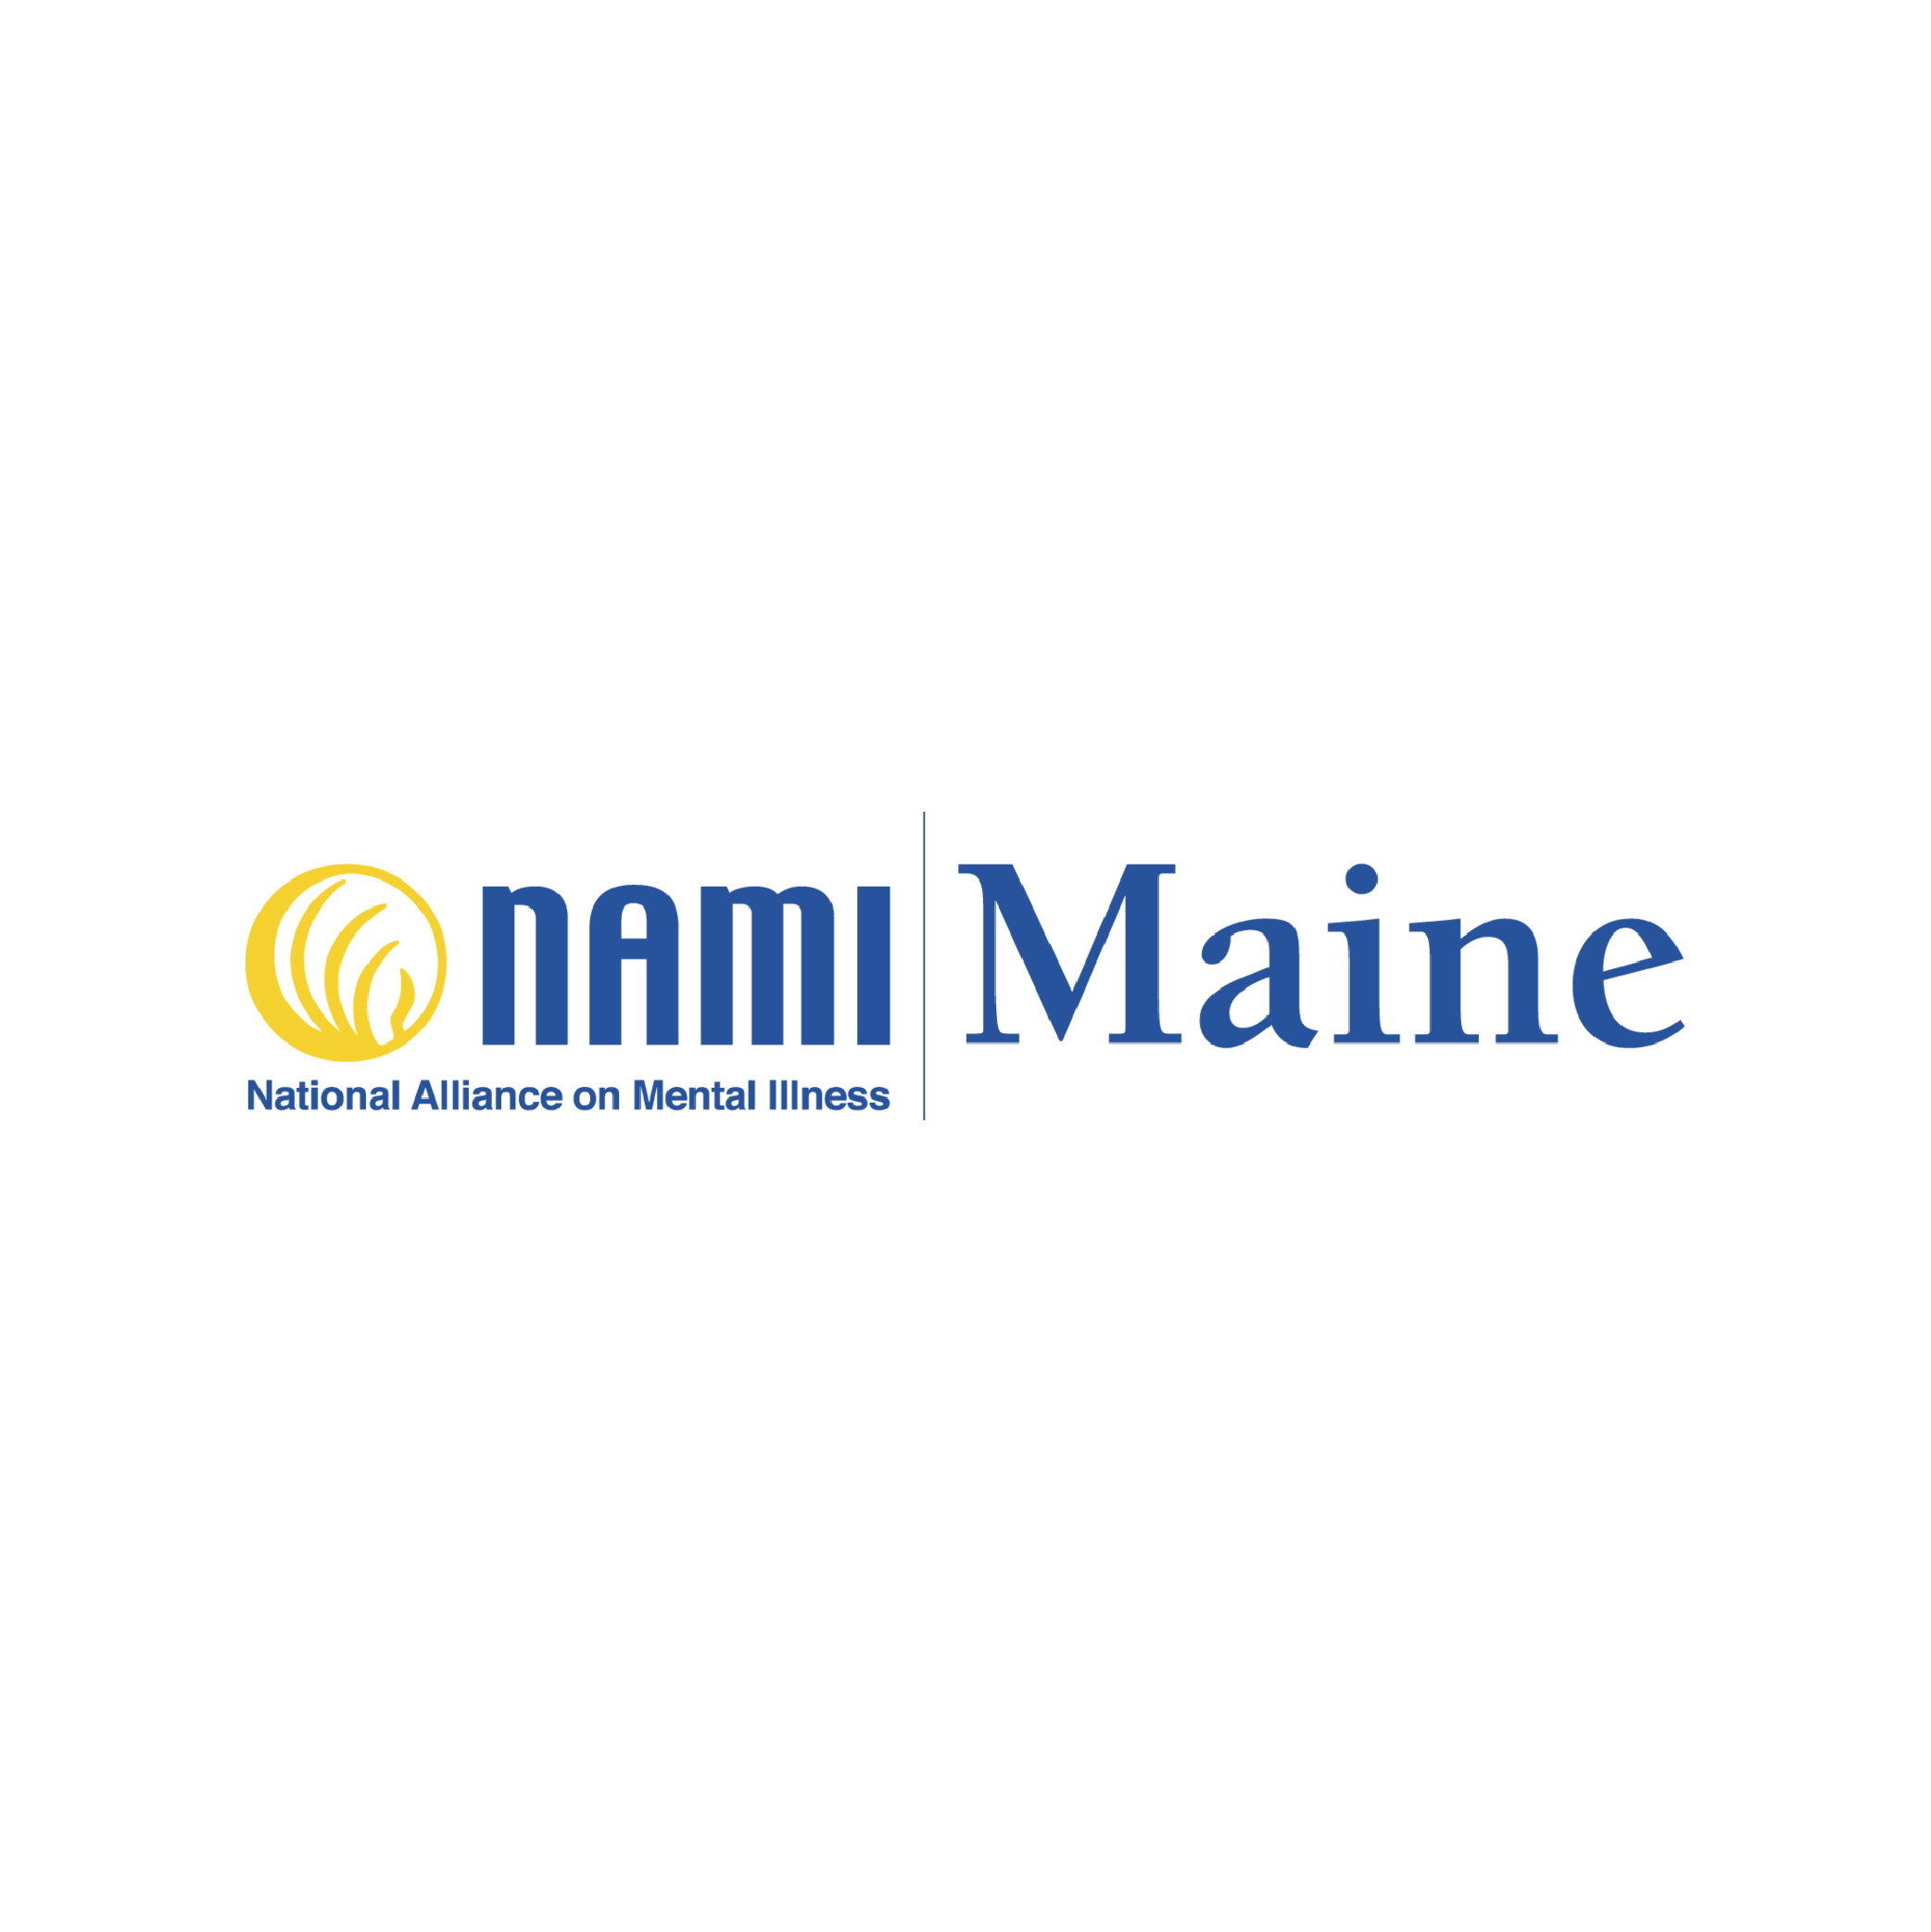 Logotipo de la Alianza Nacional de Enfermedades Mentales de Maine